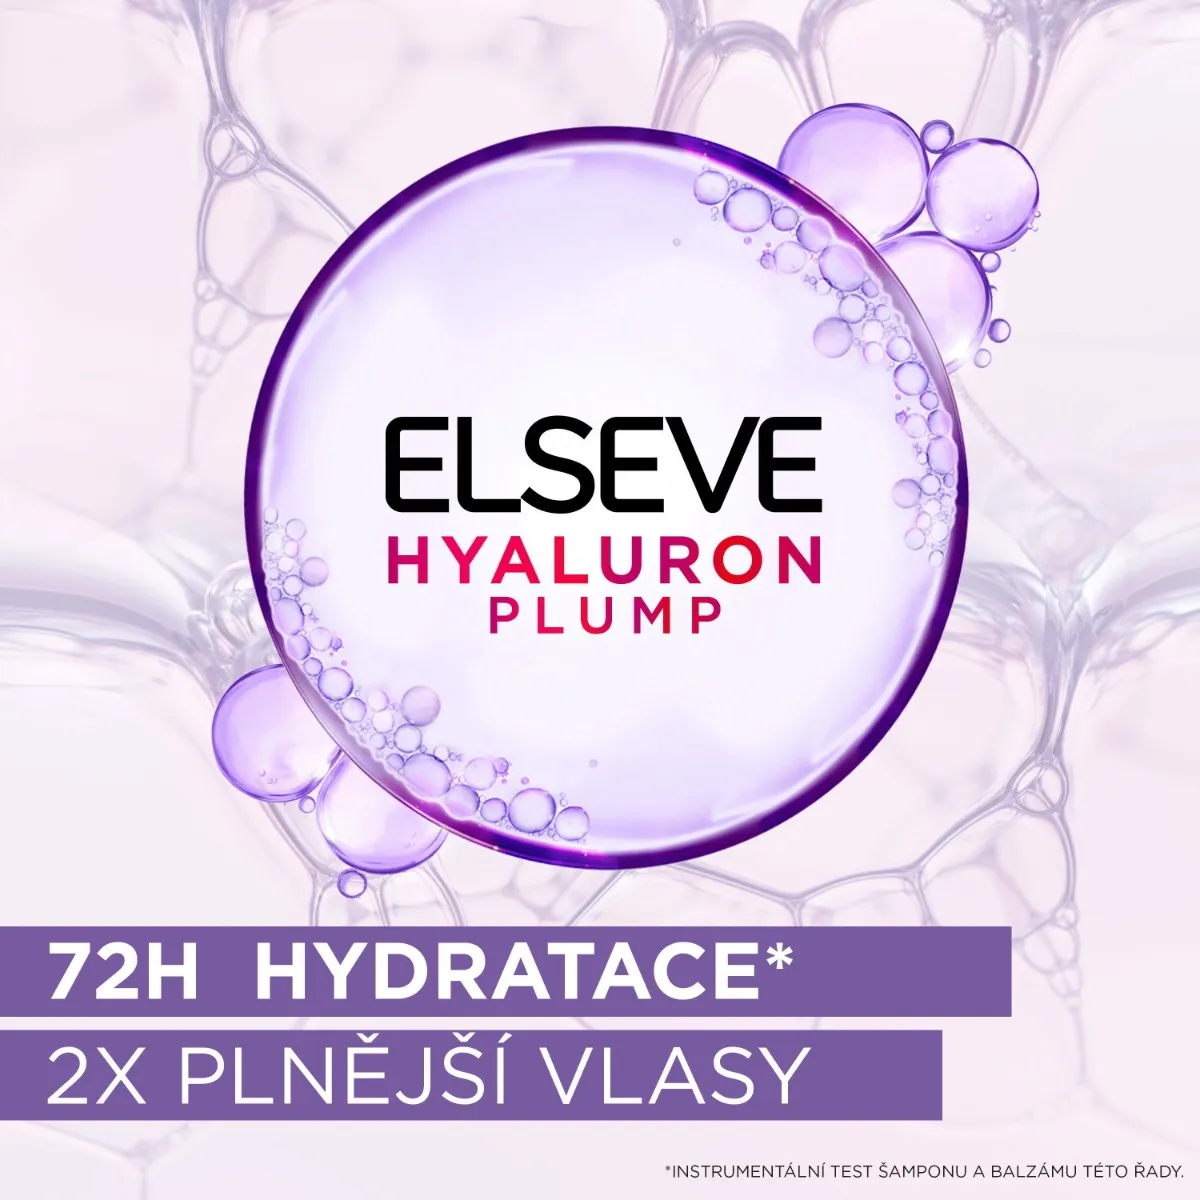 Loréal Paris Elseve Hyaluron Plump 72H hydratační šampon 250 ml